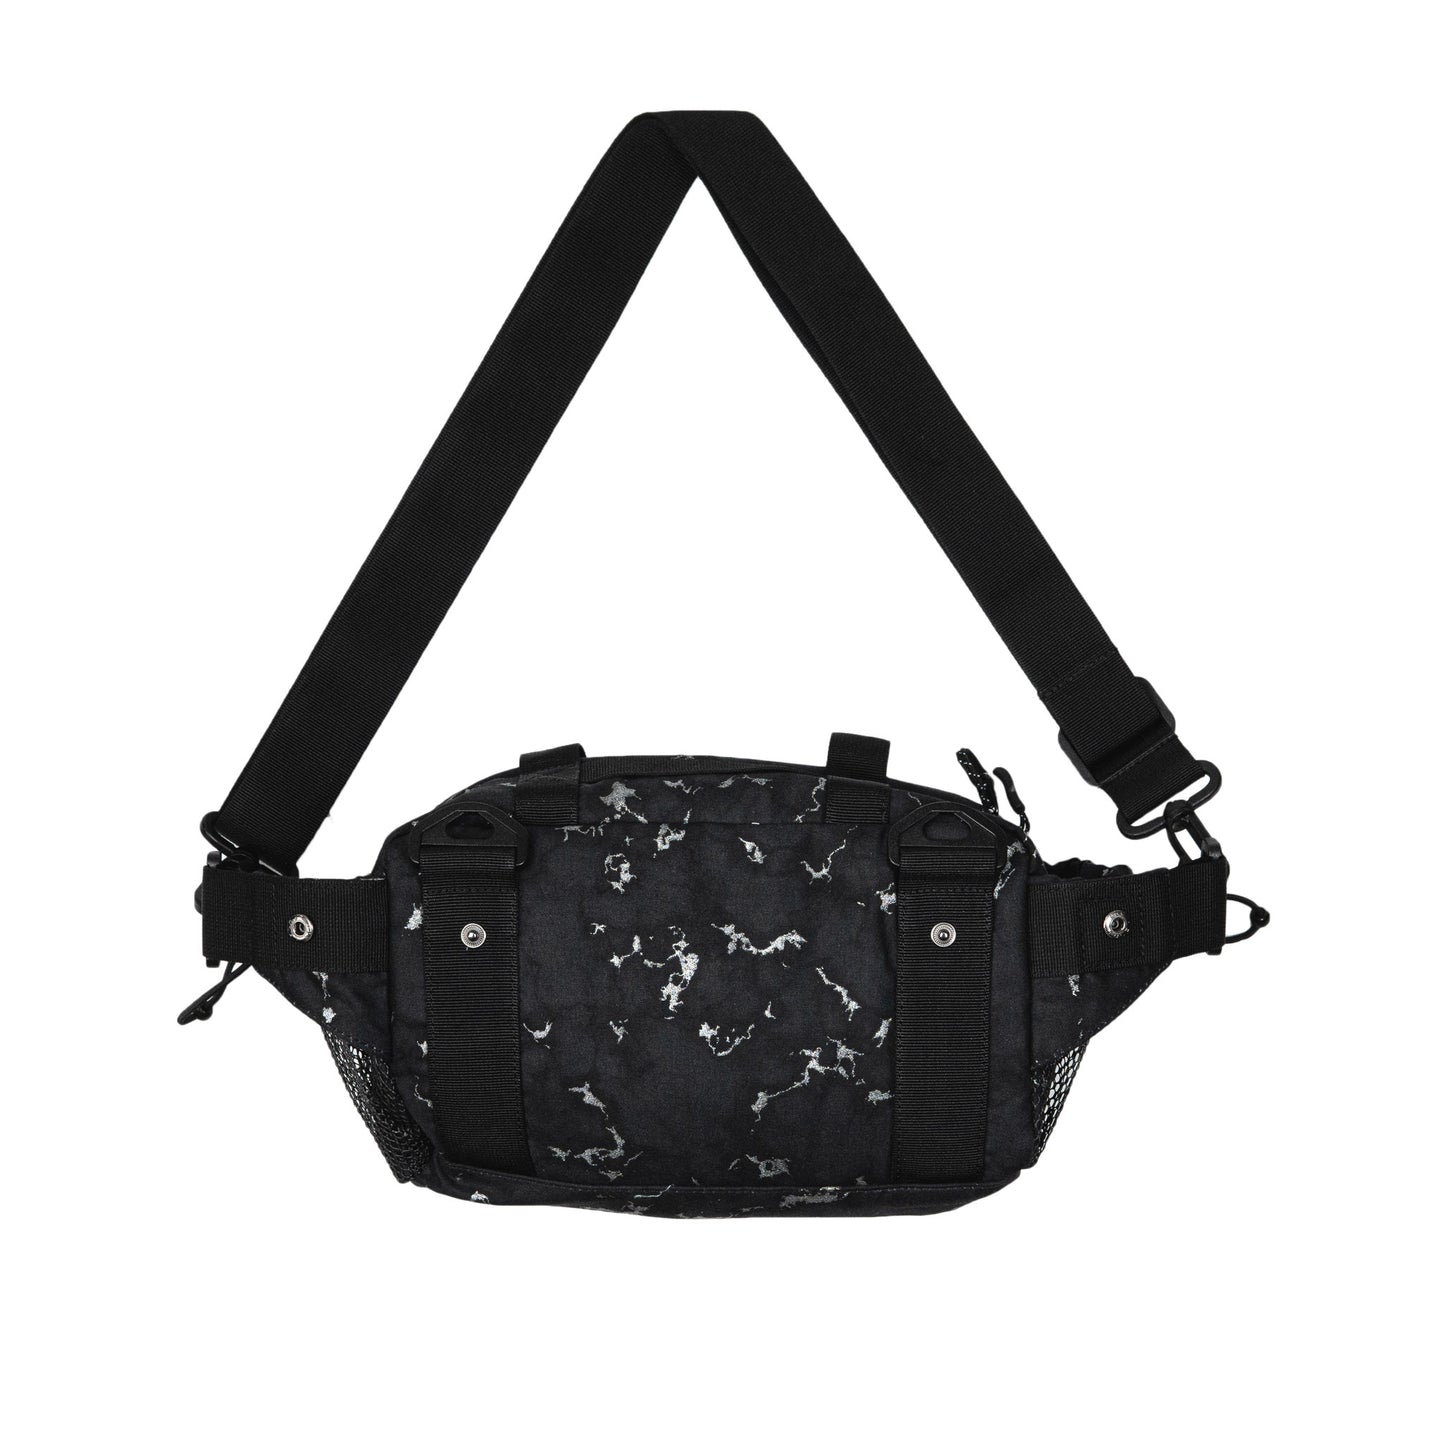 Two-Way Shoulder Bag - Marble Black